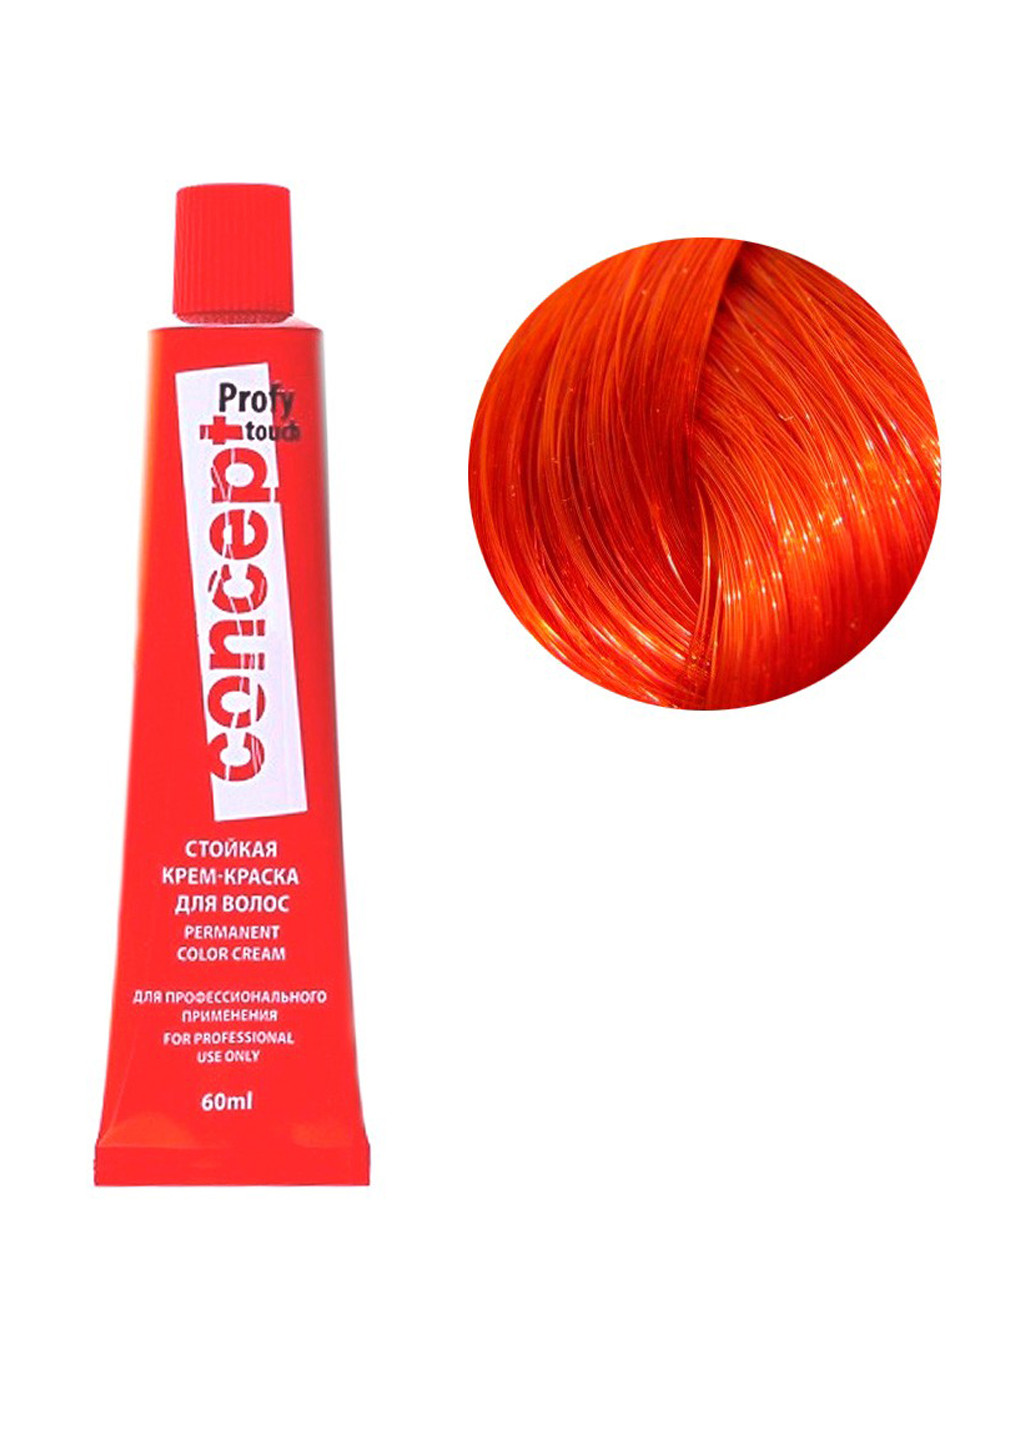 8.4, крем-краска для волос стойкая Profy Touch (светло-медный блондин), 60 мл Concept (75834941)